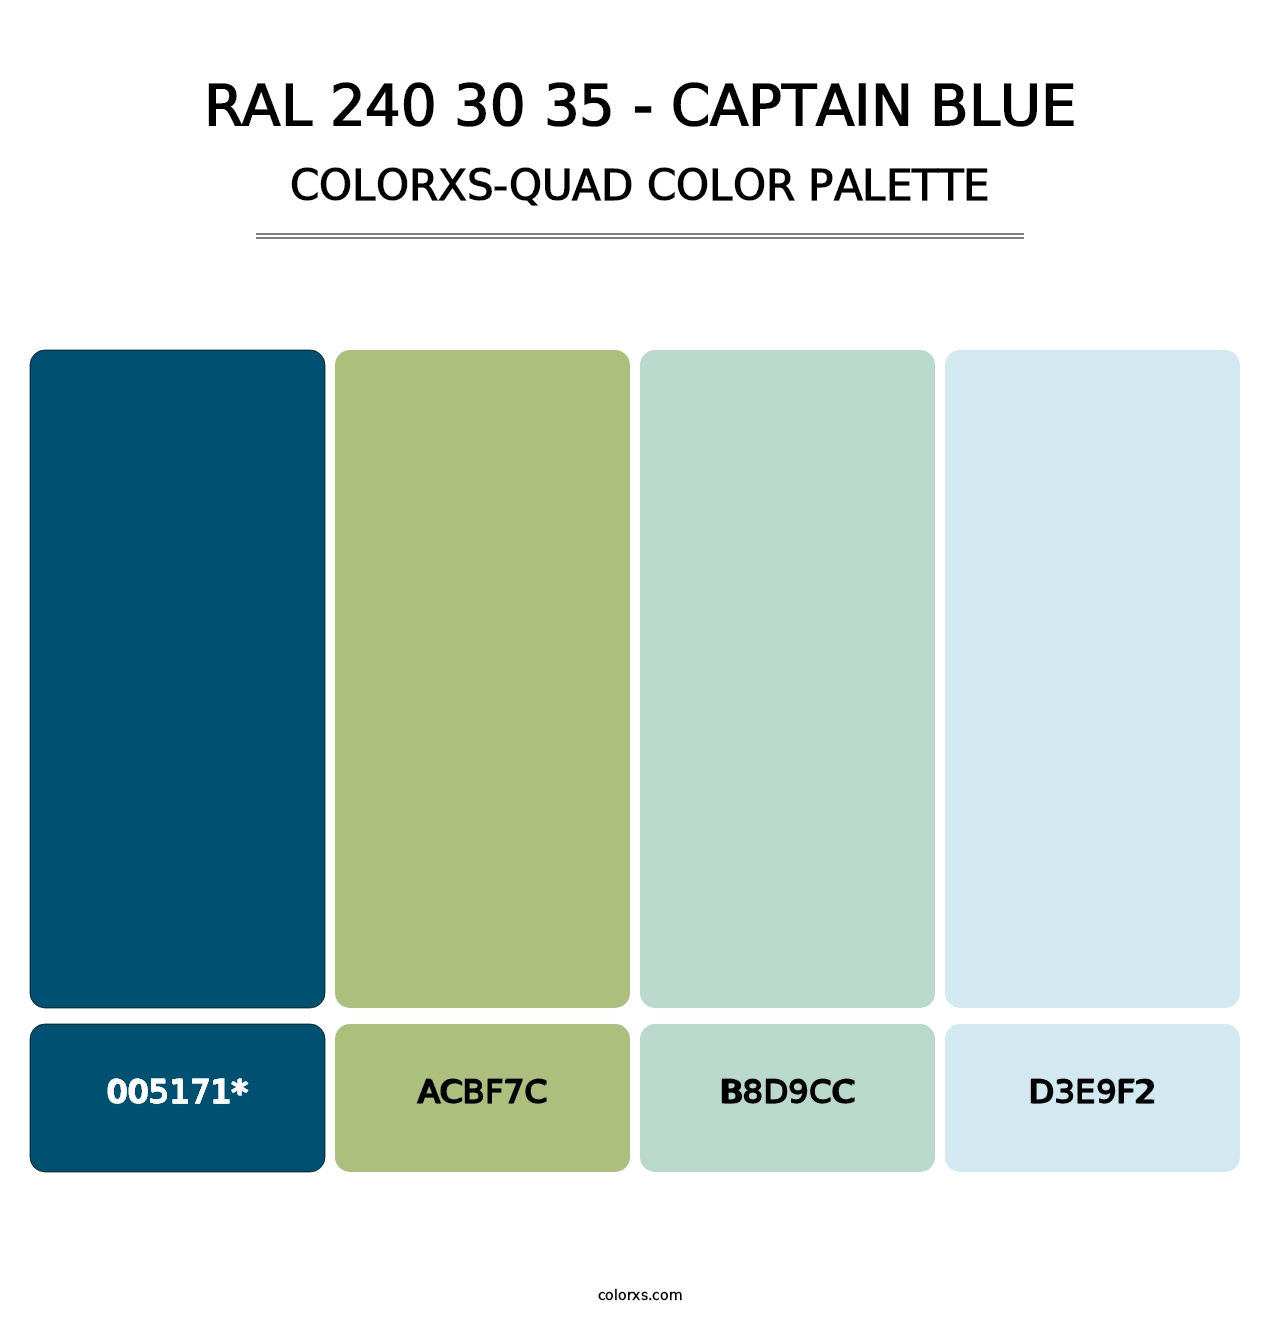 RAL 240 30 35 - Captain Blue - Colorxs Quad Palette